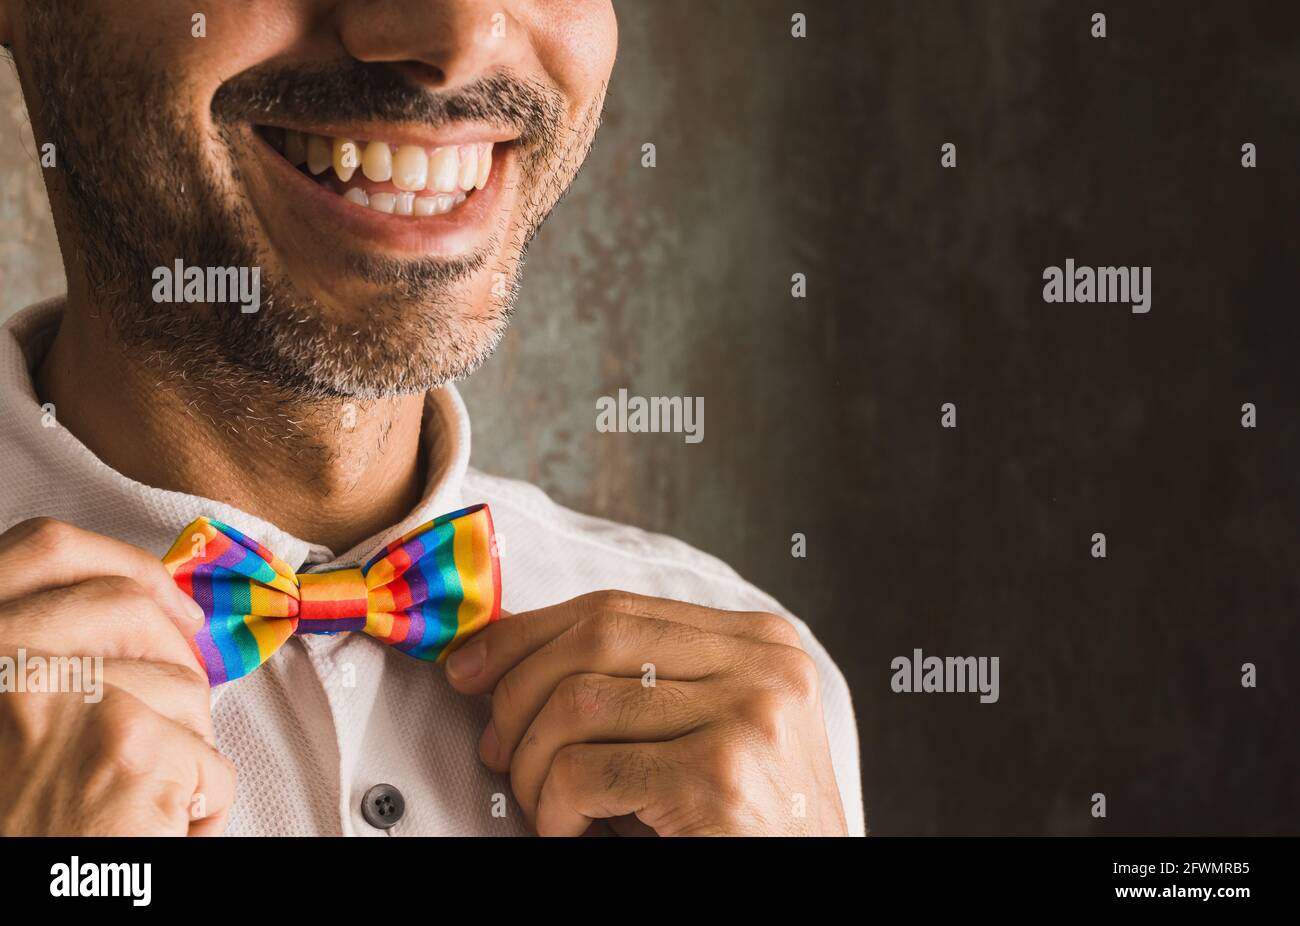 immagine orizzontale di un bruna con barba che sorride in bianco camicia e lgbtqi + cravatta arcobaleno sul lato sinistro di immagine su sfondo usurato illuminato w Foto Stock